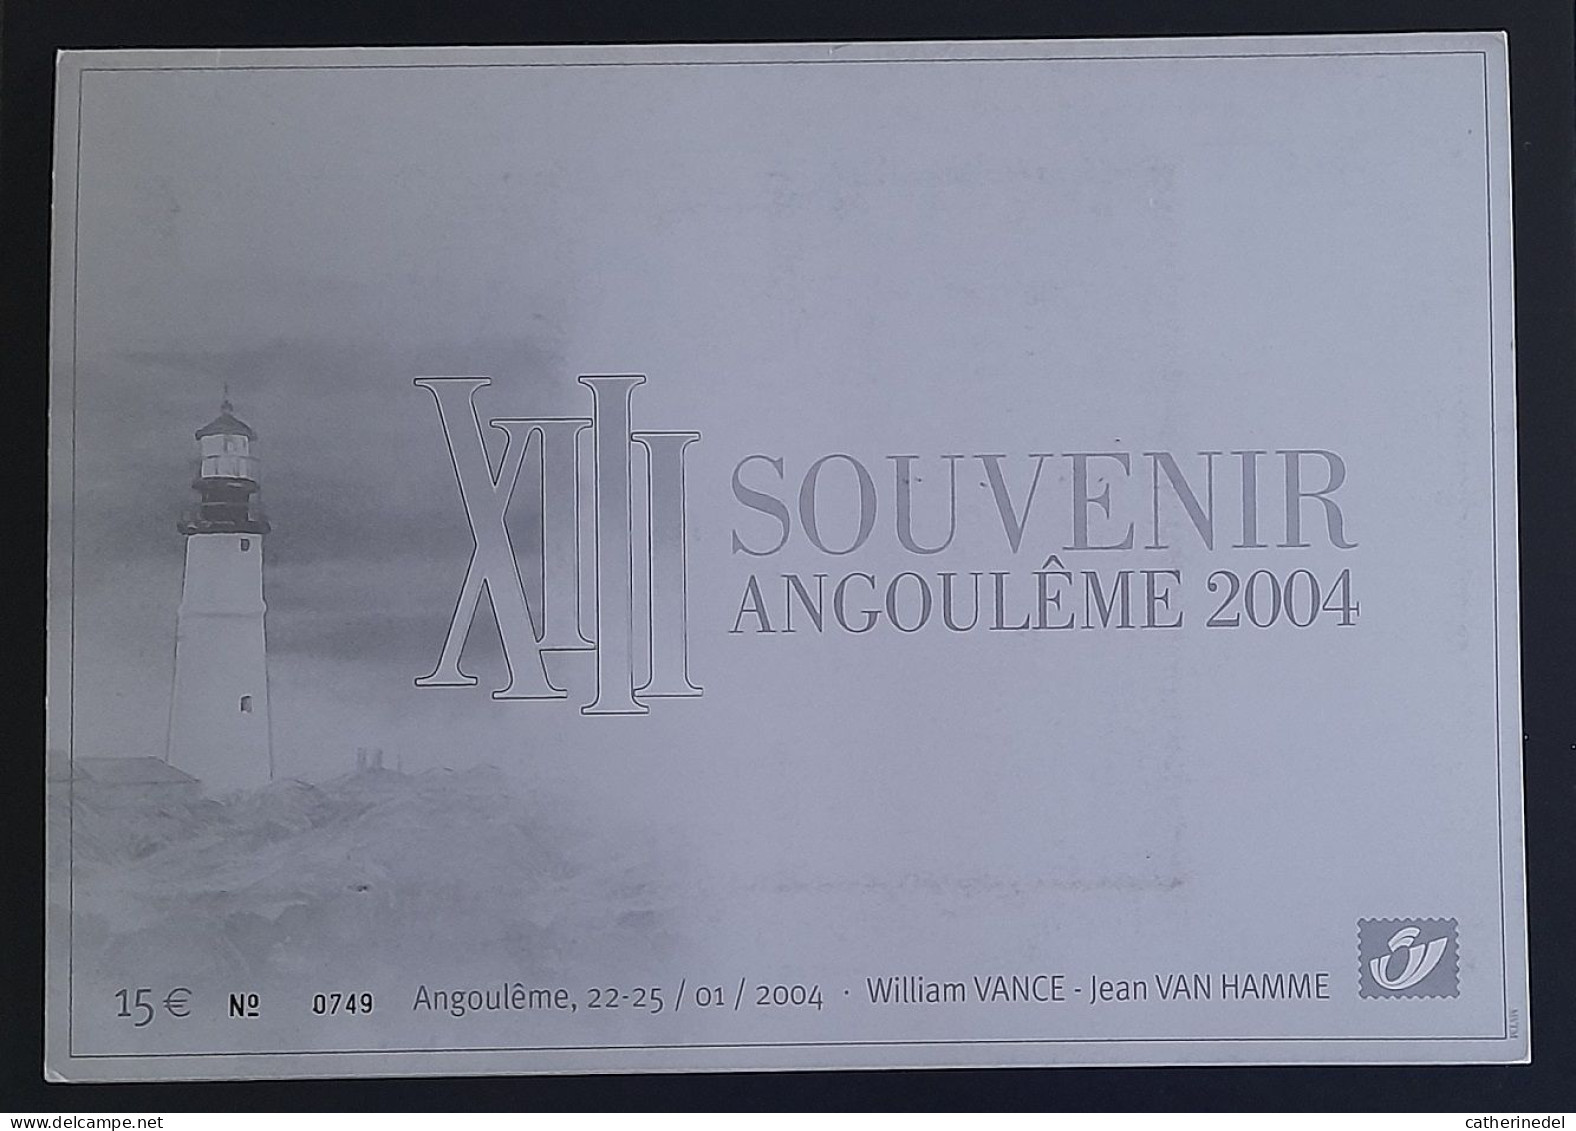 Année 2004 : 3233 - Pochette Souvenir Angoulème 2004 XIII - William VANCE - Jean VAN HAMME - Numérotée 0749 - Philabédés (comics)